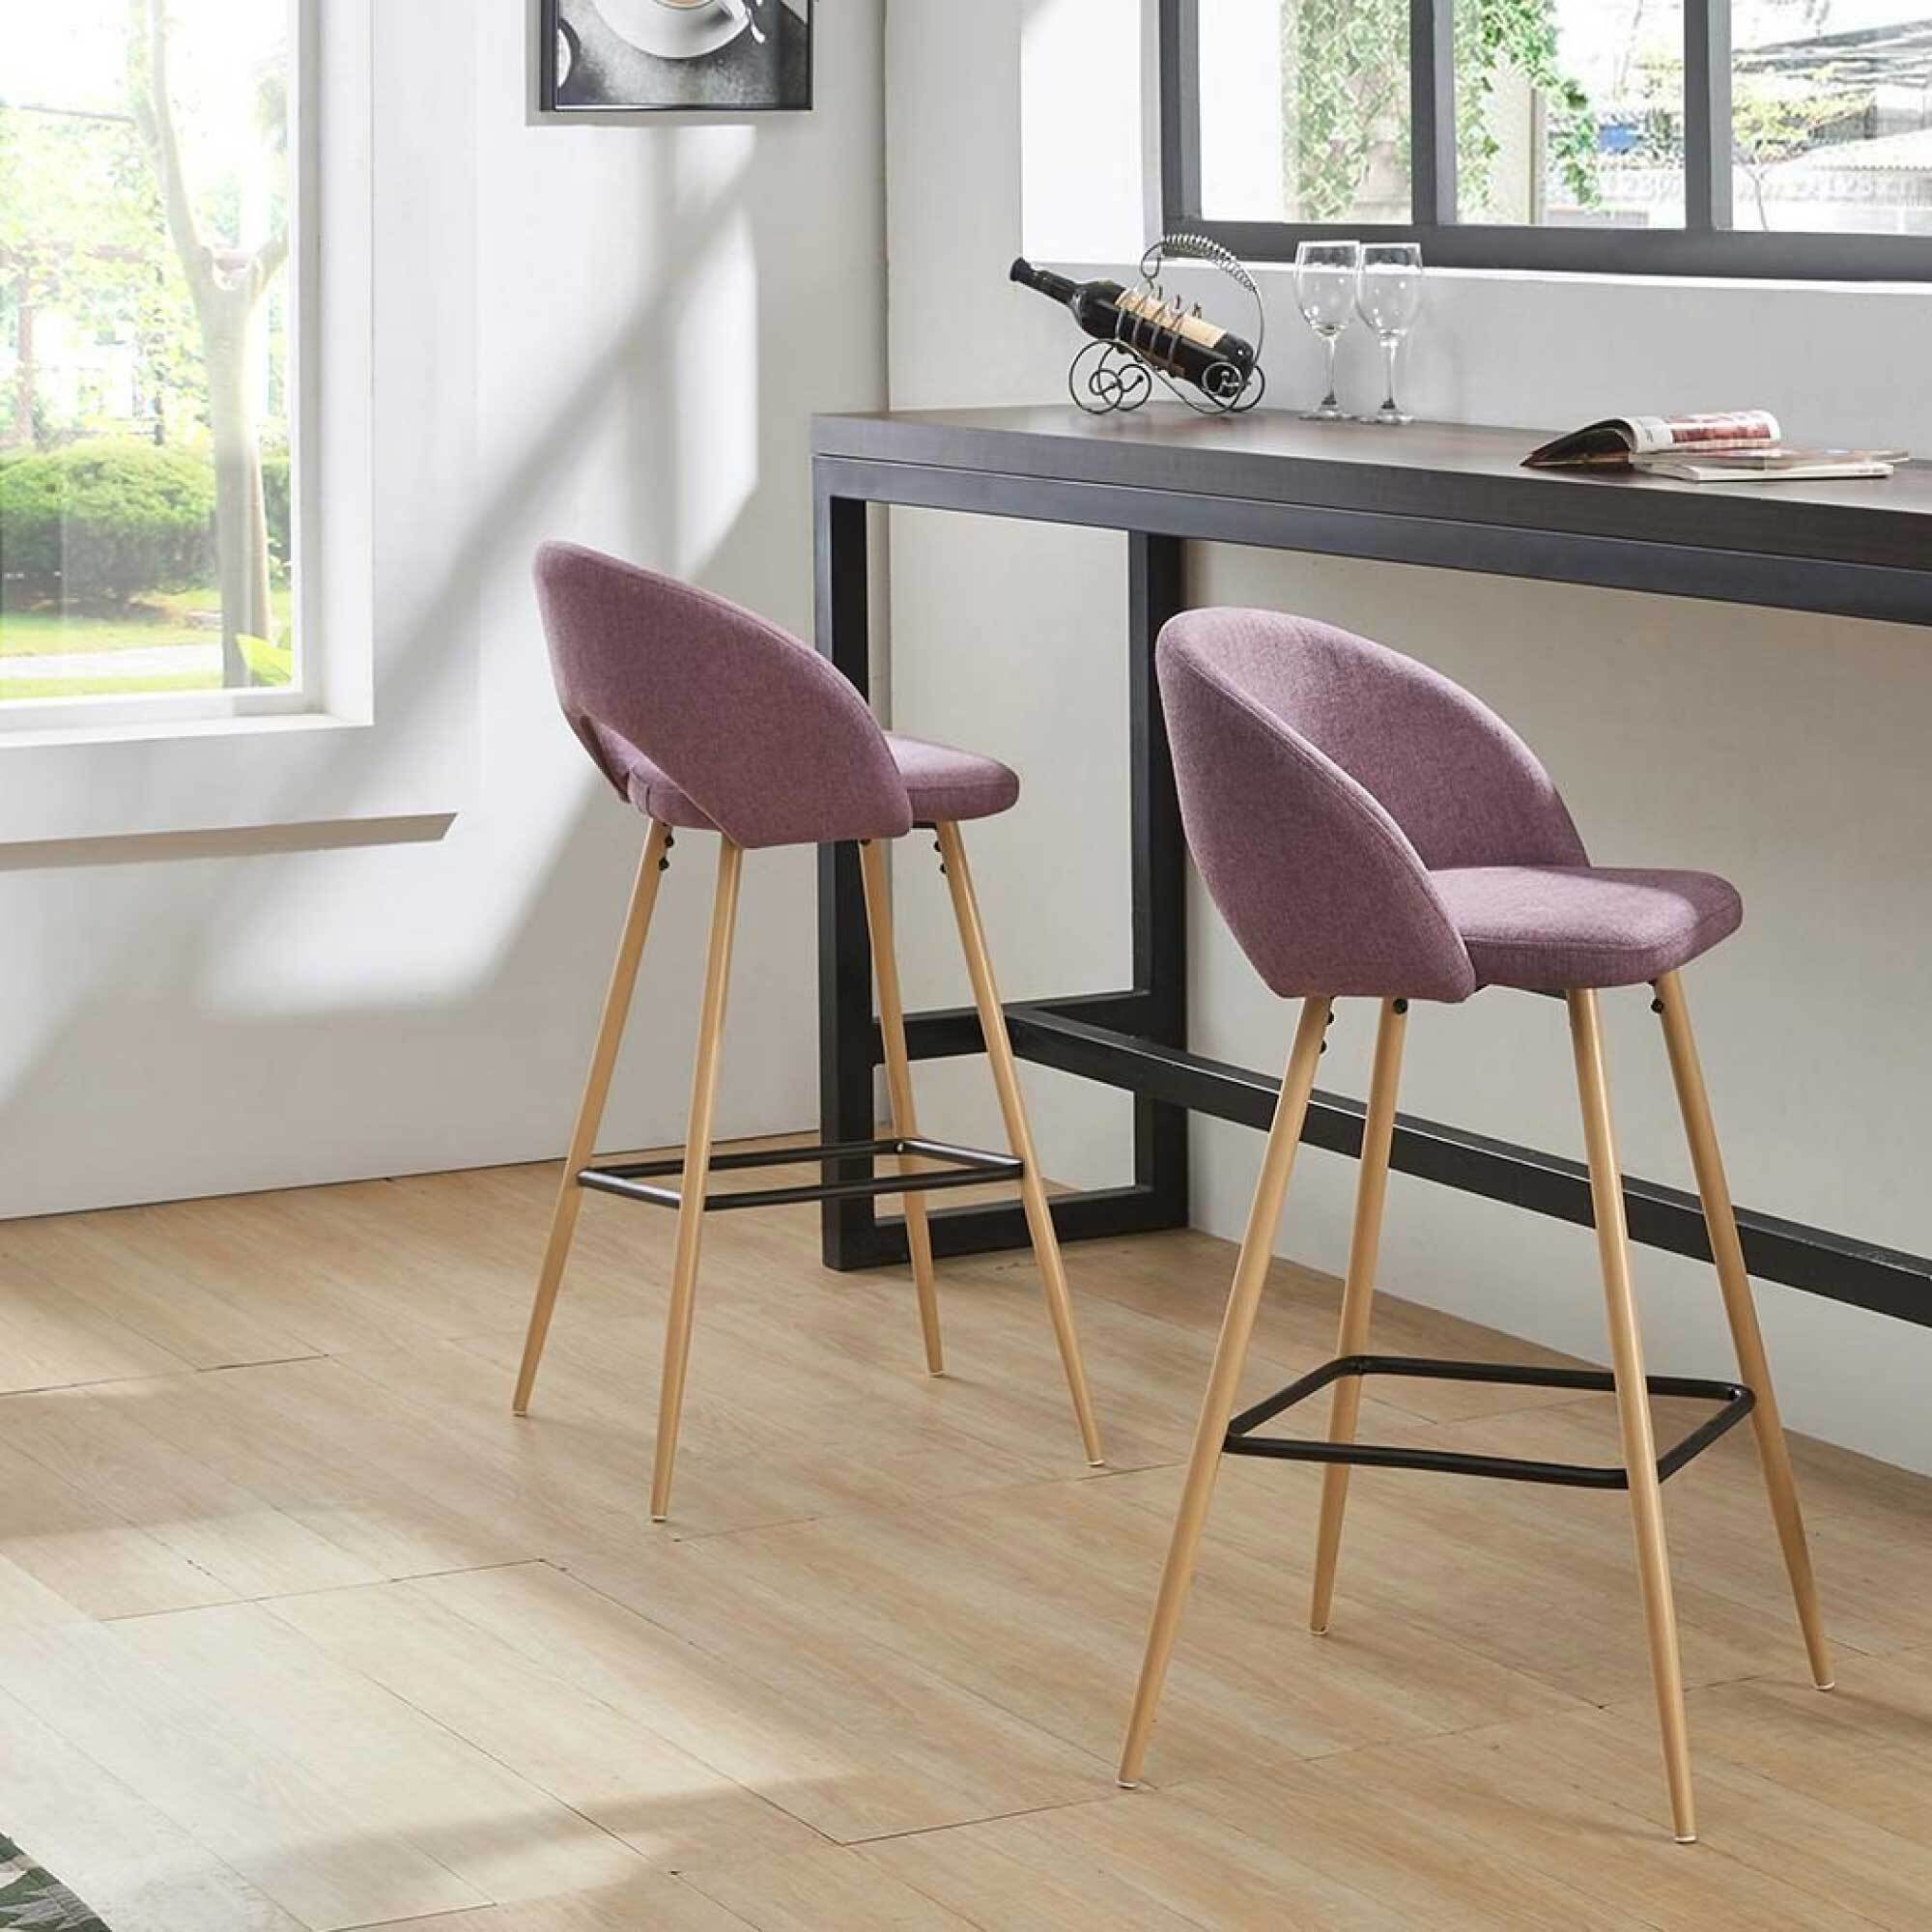 барные стулья на кухню